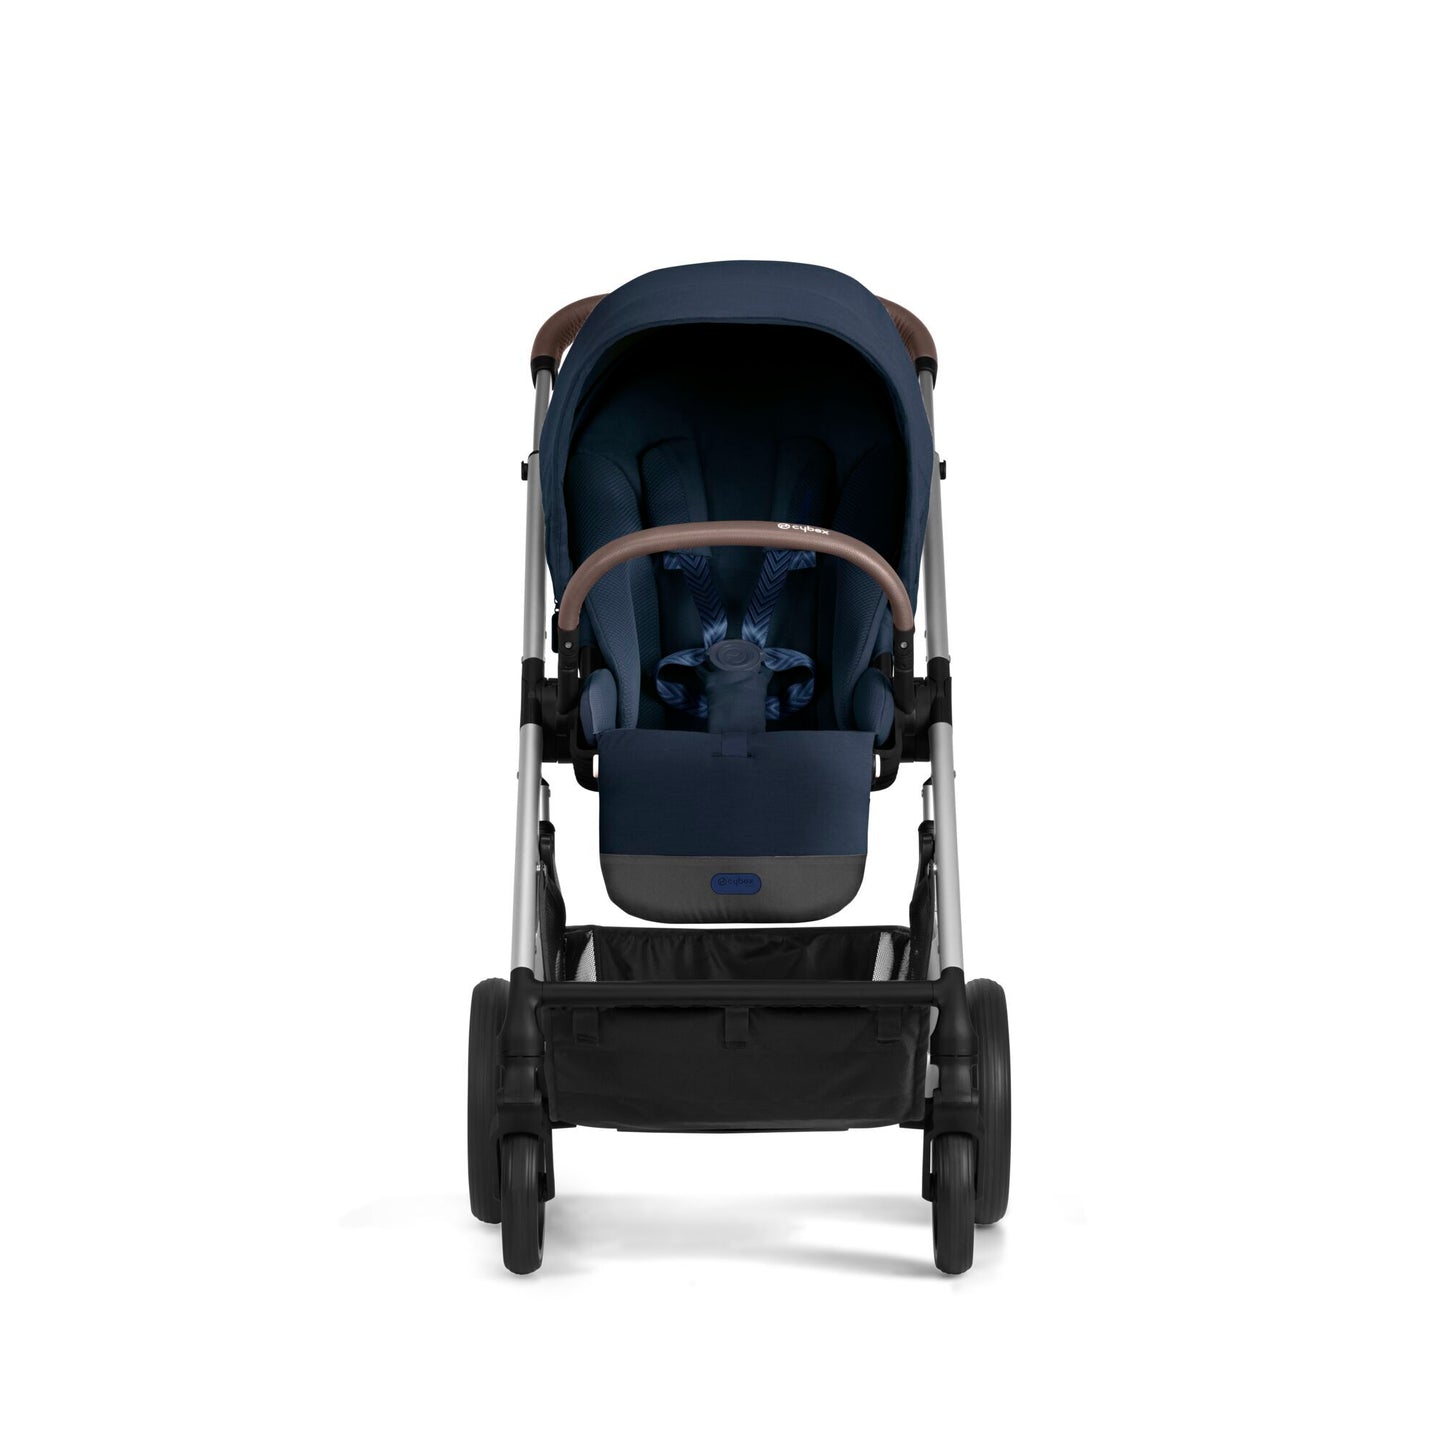 עגלת תינוק משולבת - טיולון ועריסה Balios S4 בצבע כחול Navy Blue